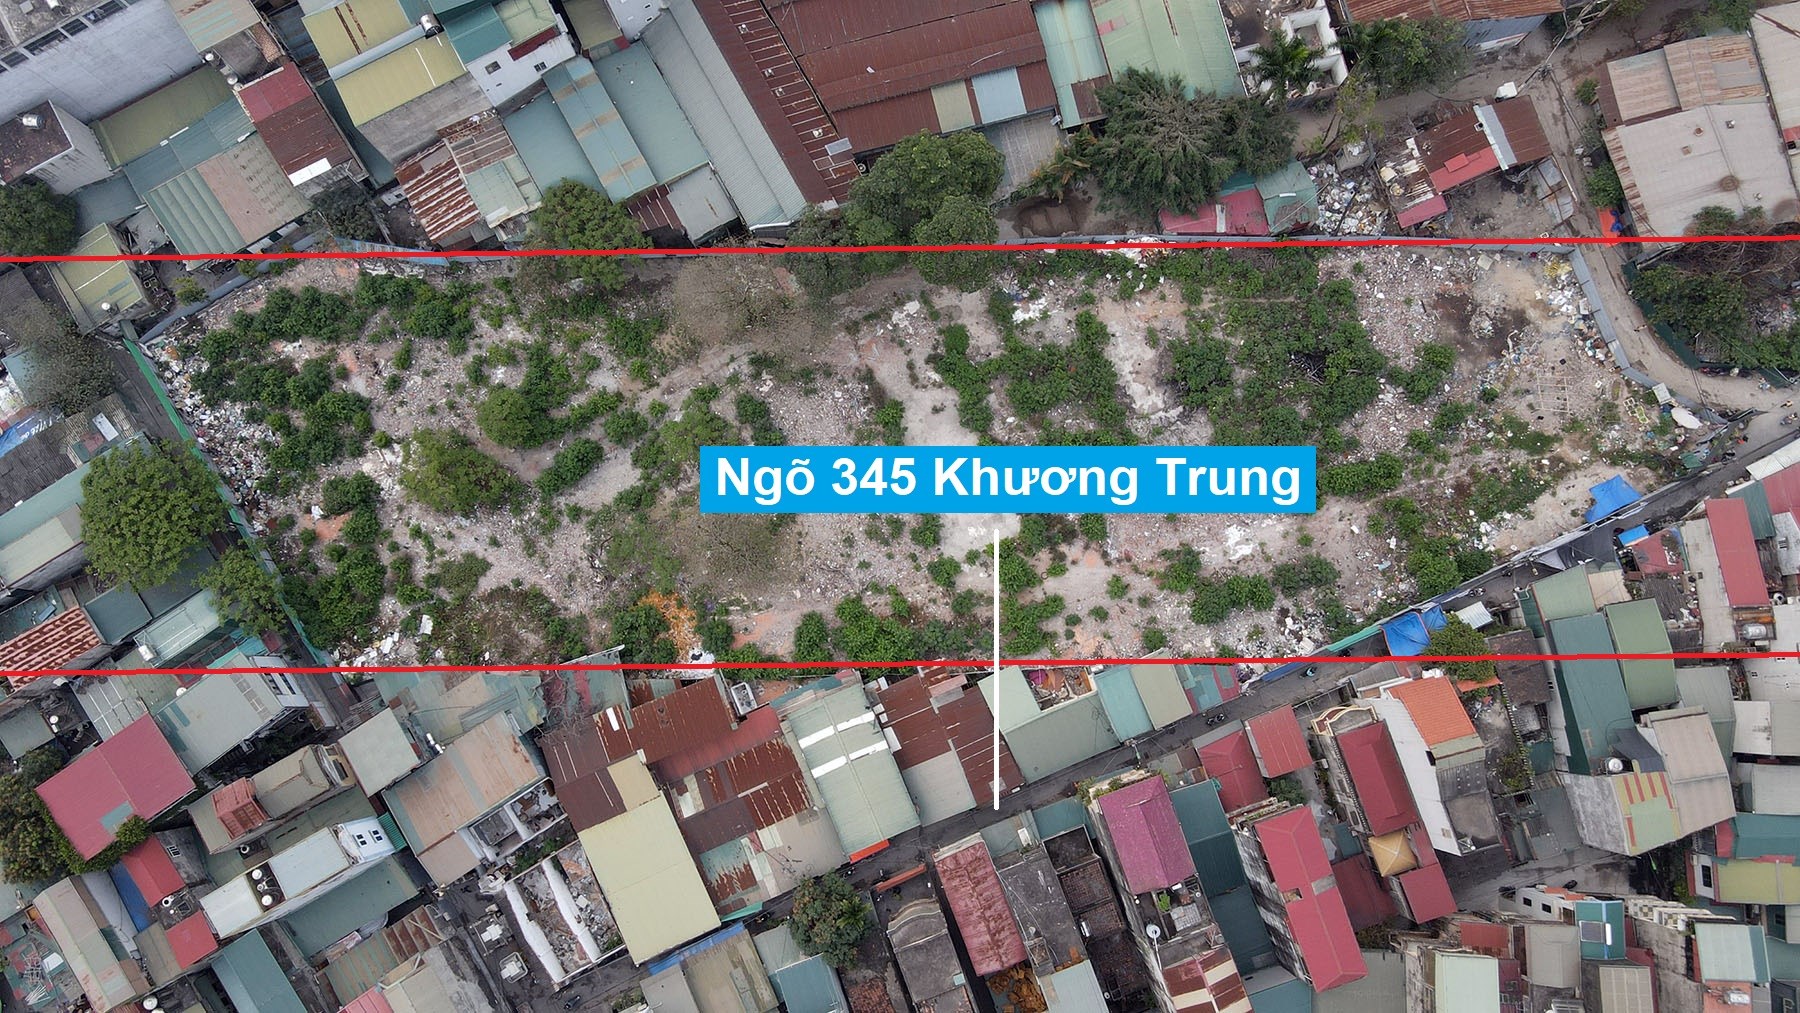 Những khu đất có thể thu hồi để làm vành đai 2,5 đoạn Nguyễn Trãi - Đầm Hồng vừa được Hà Nội duyệt đầu tư